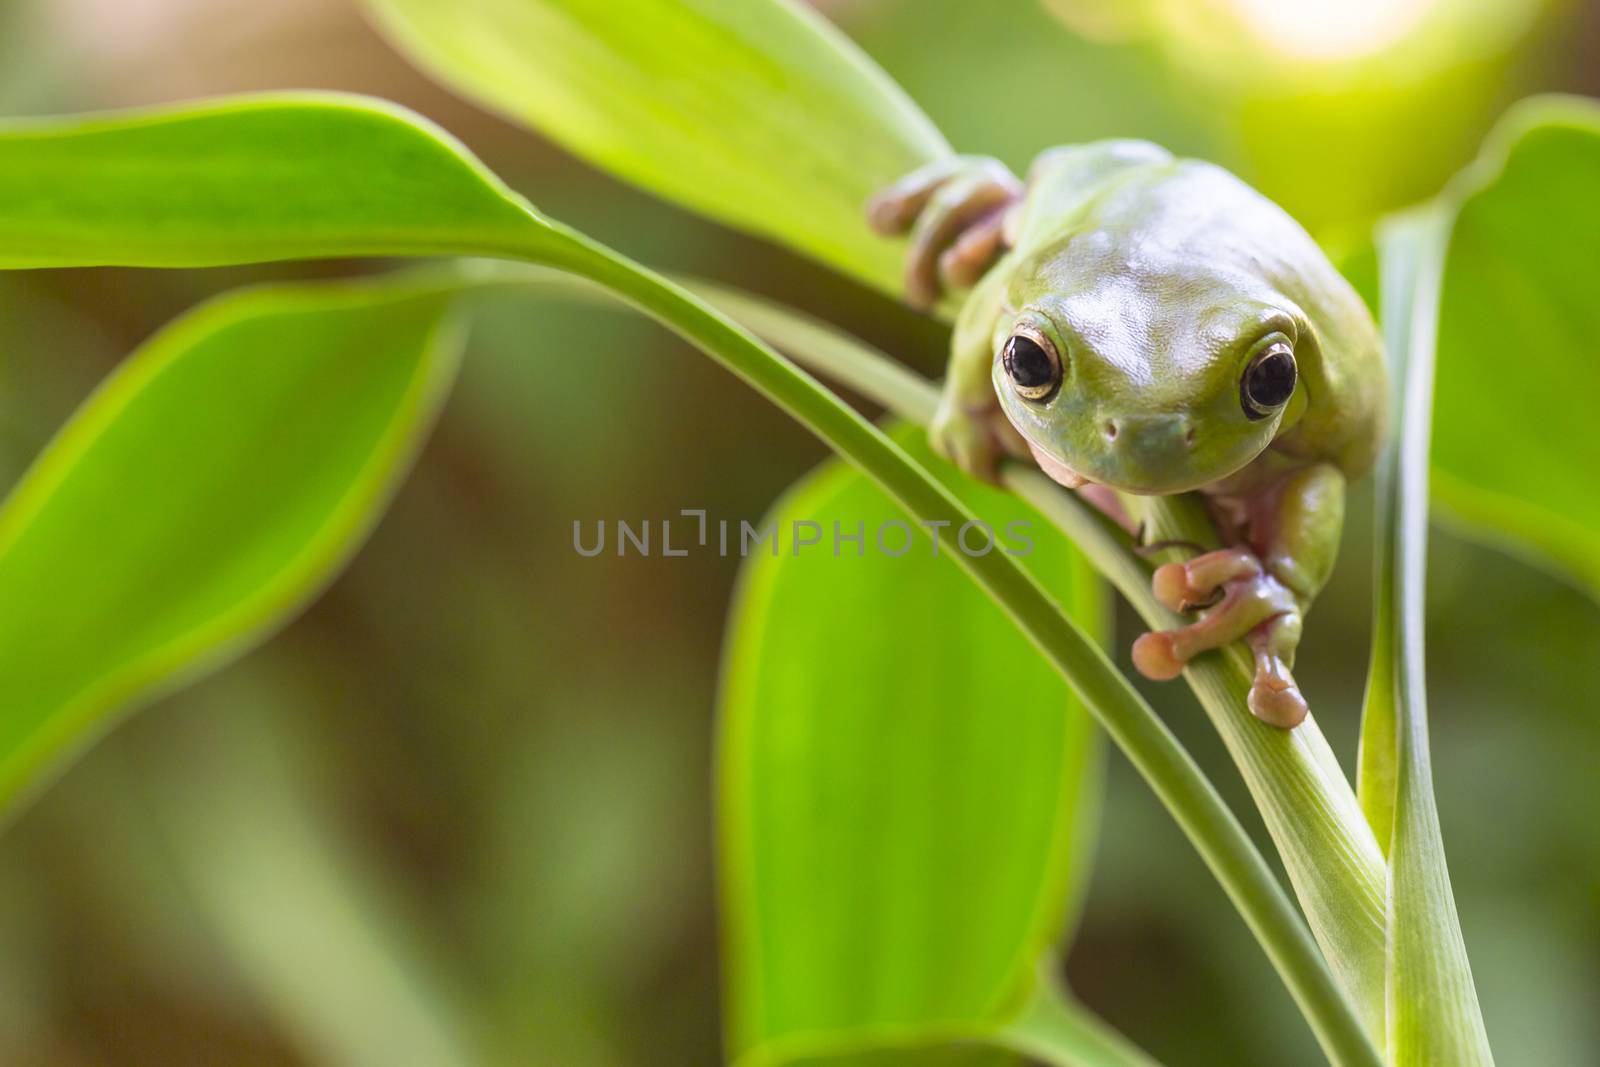 Australian Green Tree Frog sneaking on a plant.